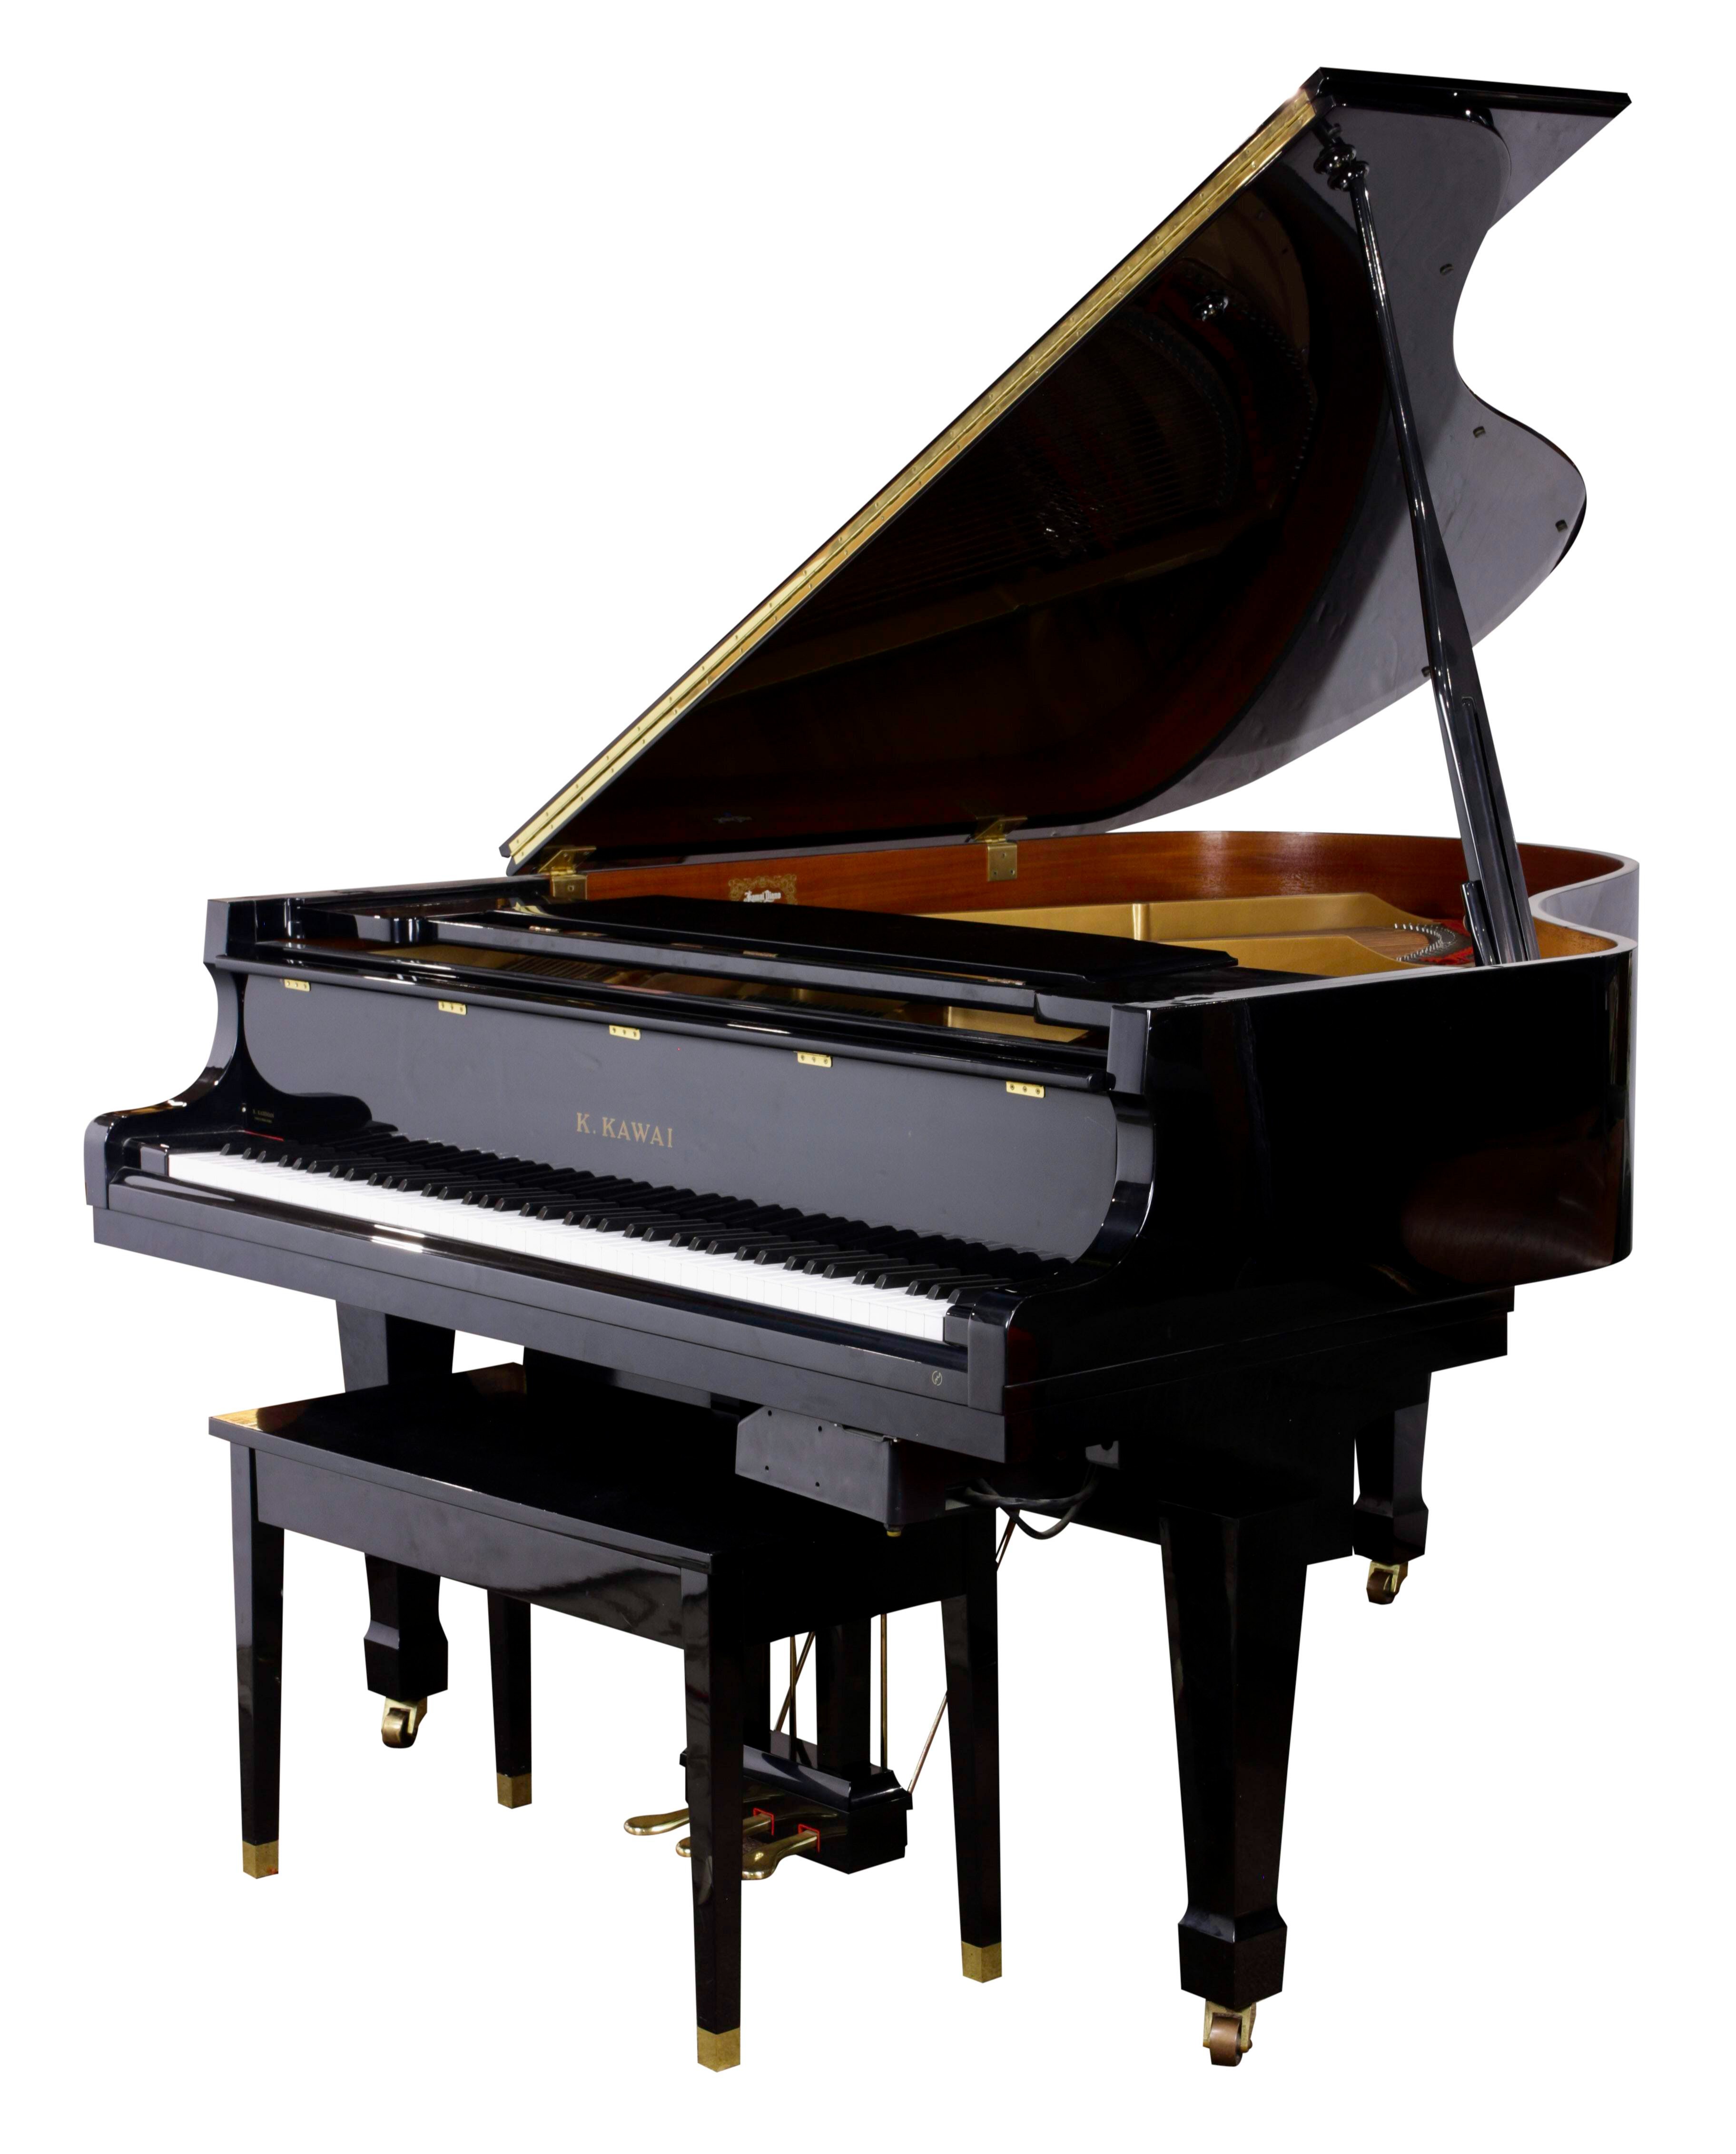 A K KAWAI GS 30 GRAND PIANO A 3a64fd